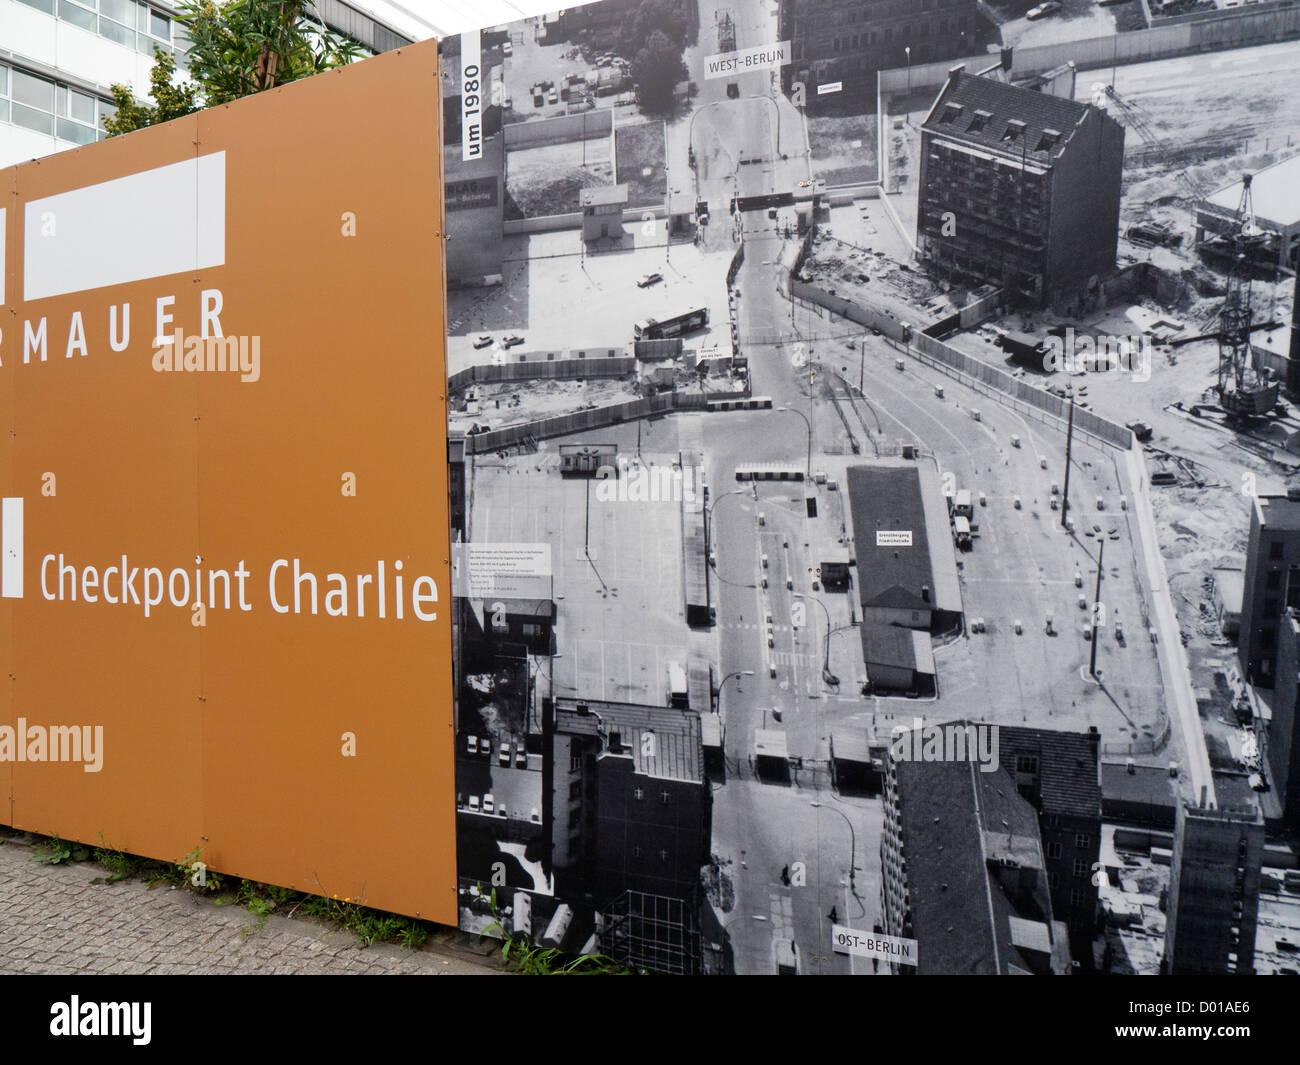 Un affichage sur le site de Checkpoint Charlie montrant l'ancienne frontière entre l'Est et l'ouest de Berlin Allemagne Banque D'Images